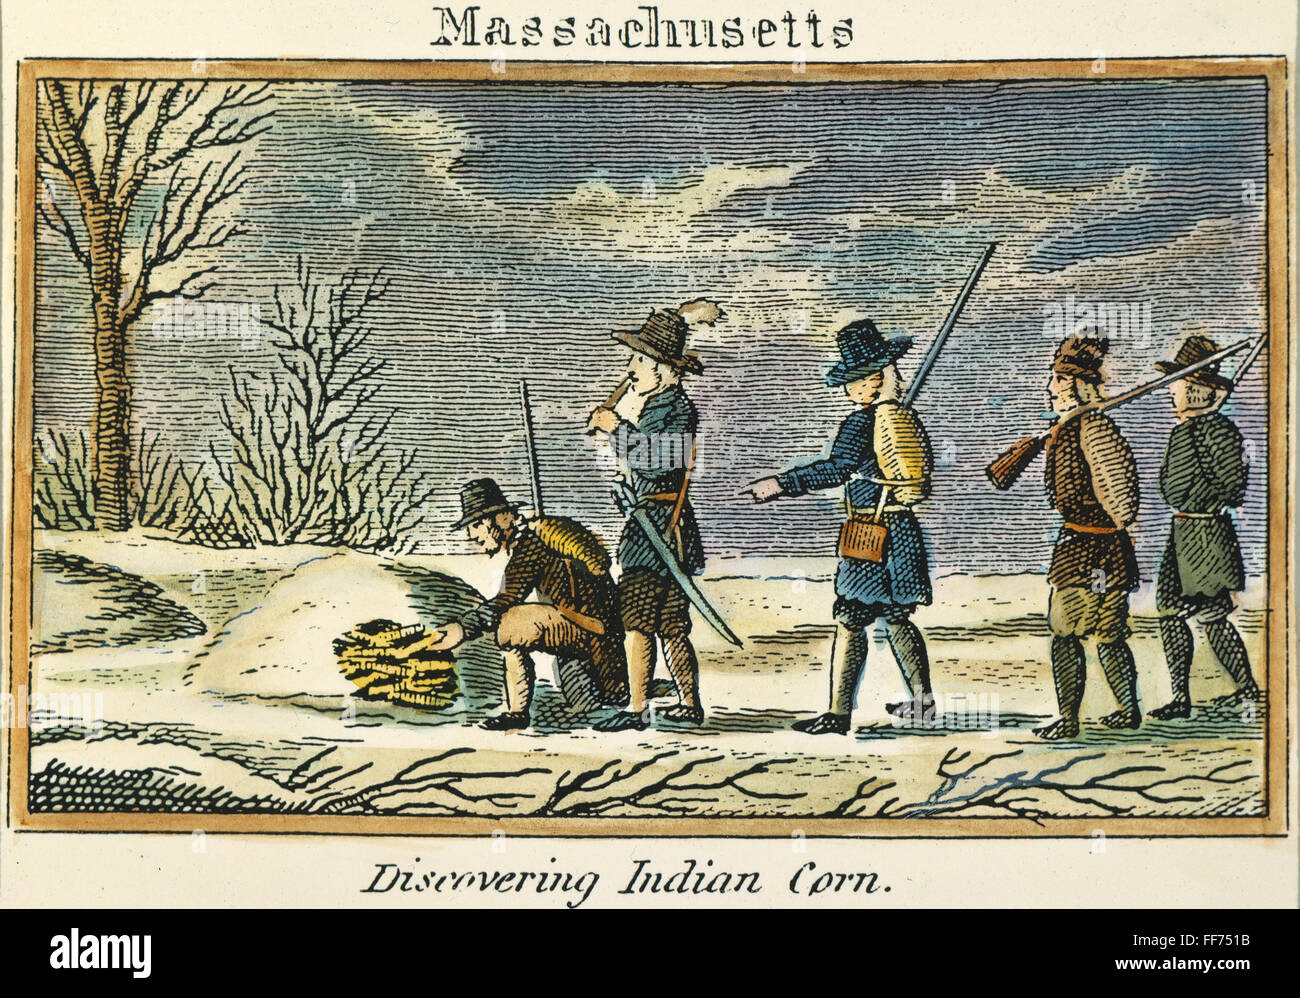 PILGER: INDIANISCHE MAIS. /nPilgrims indianische Mais zu entdecken. Linie, Gravur, amerikanisch, 1829. Stockfoto